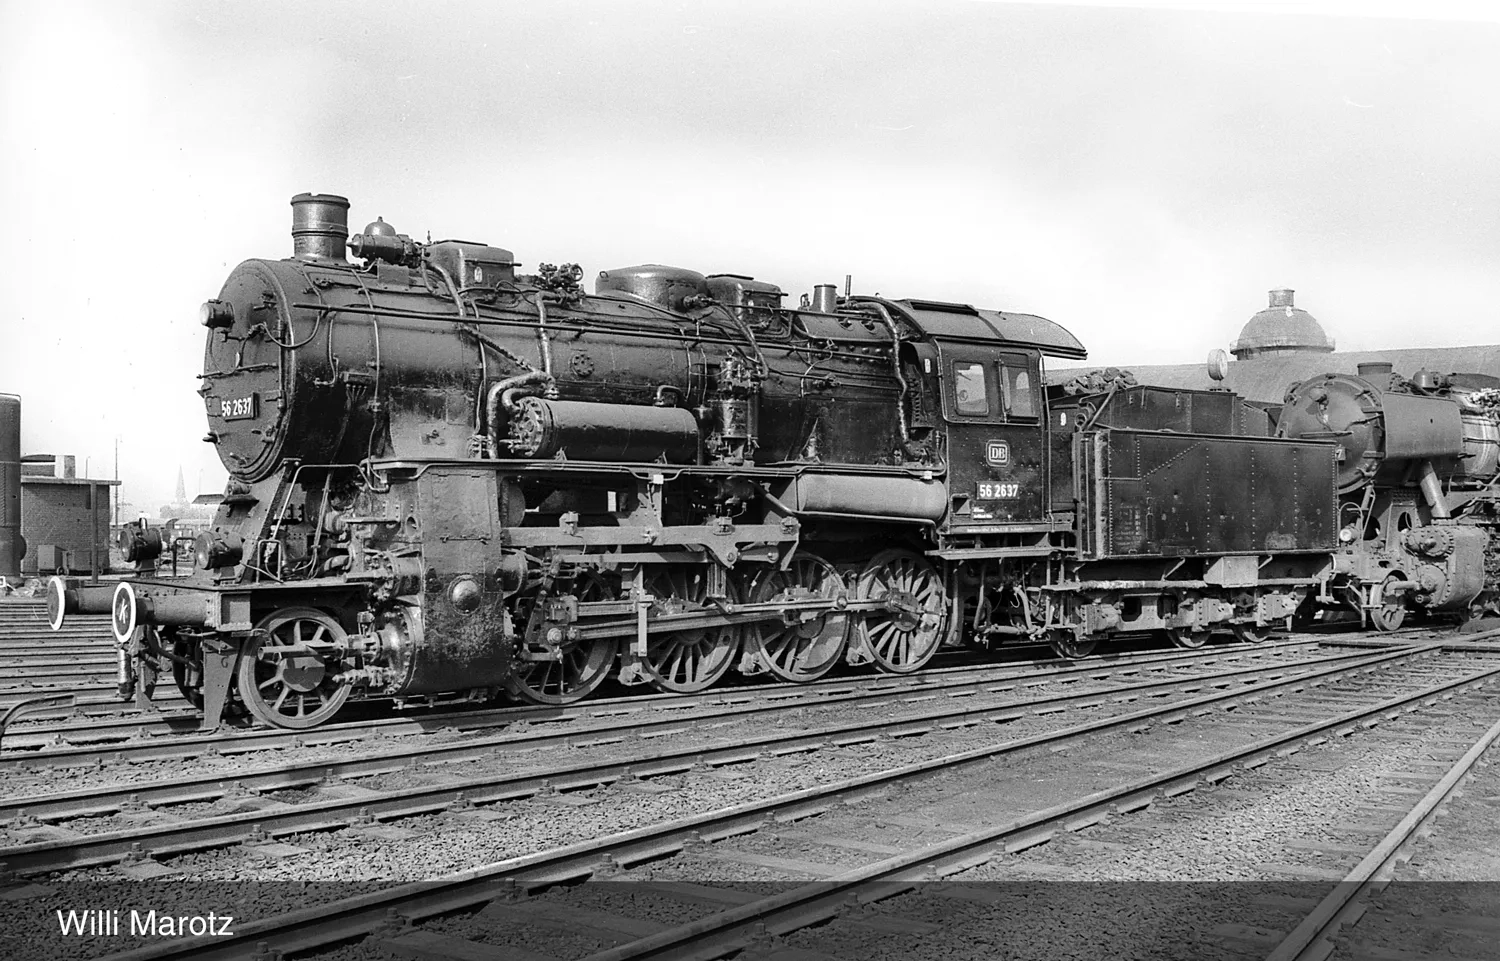 DB, Dampflokomotive Baureihe 56.20, dreidomiger Kessel, in schwarz/roter Lackierung, Ep. III, mit DCC-Sounddecoder